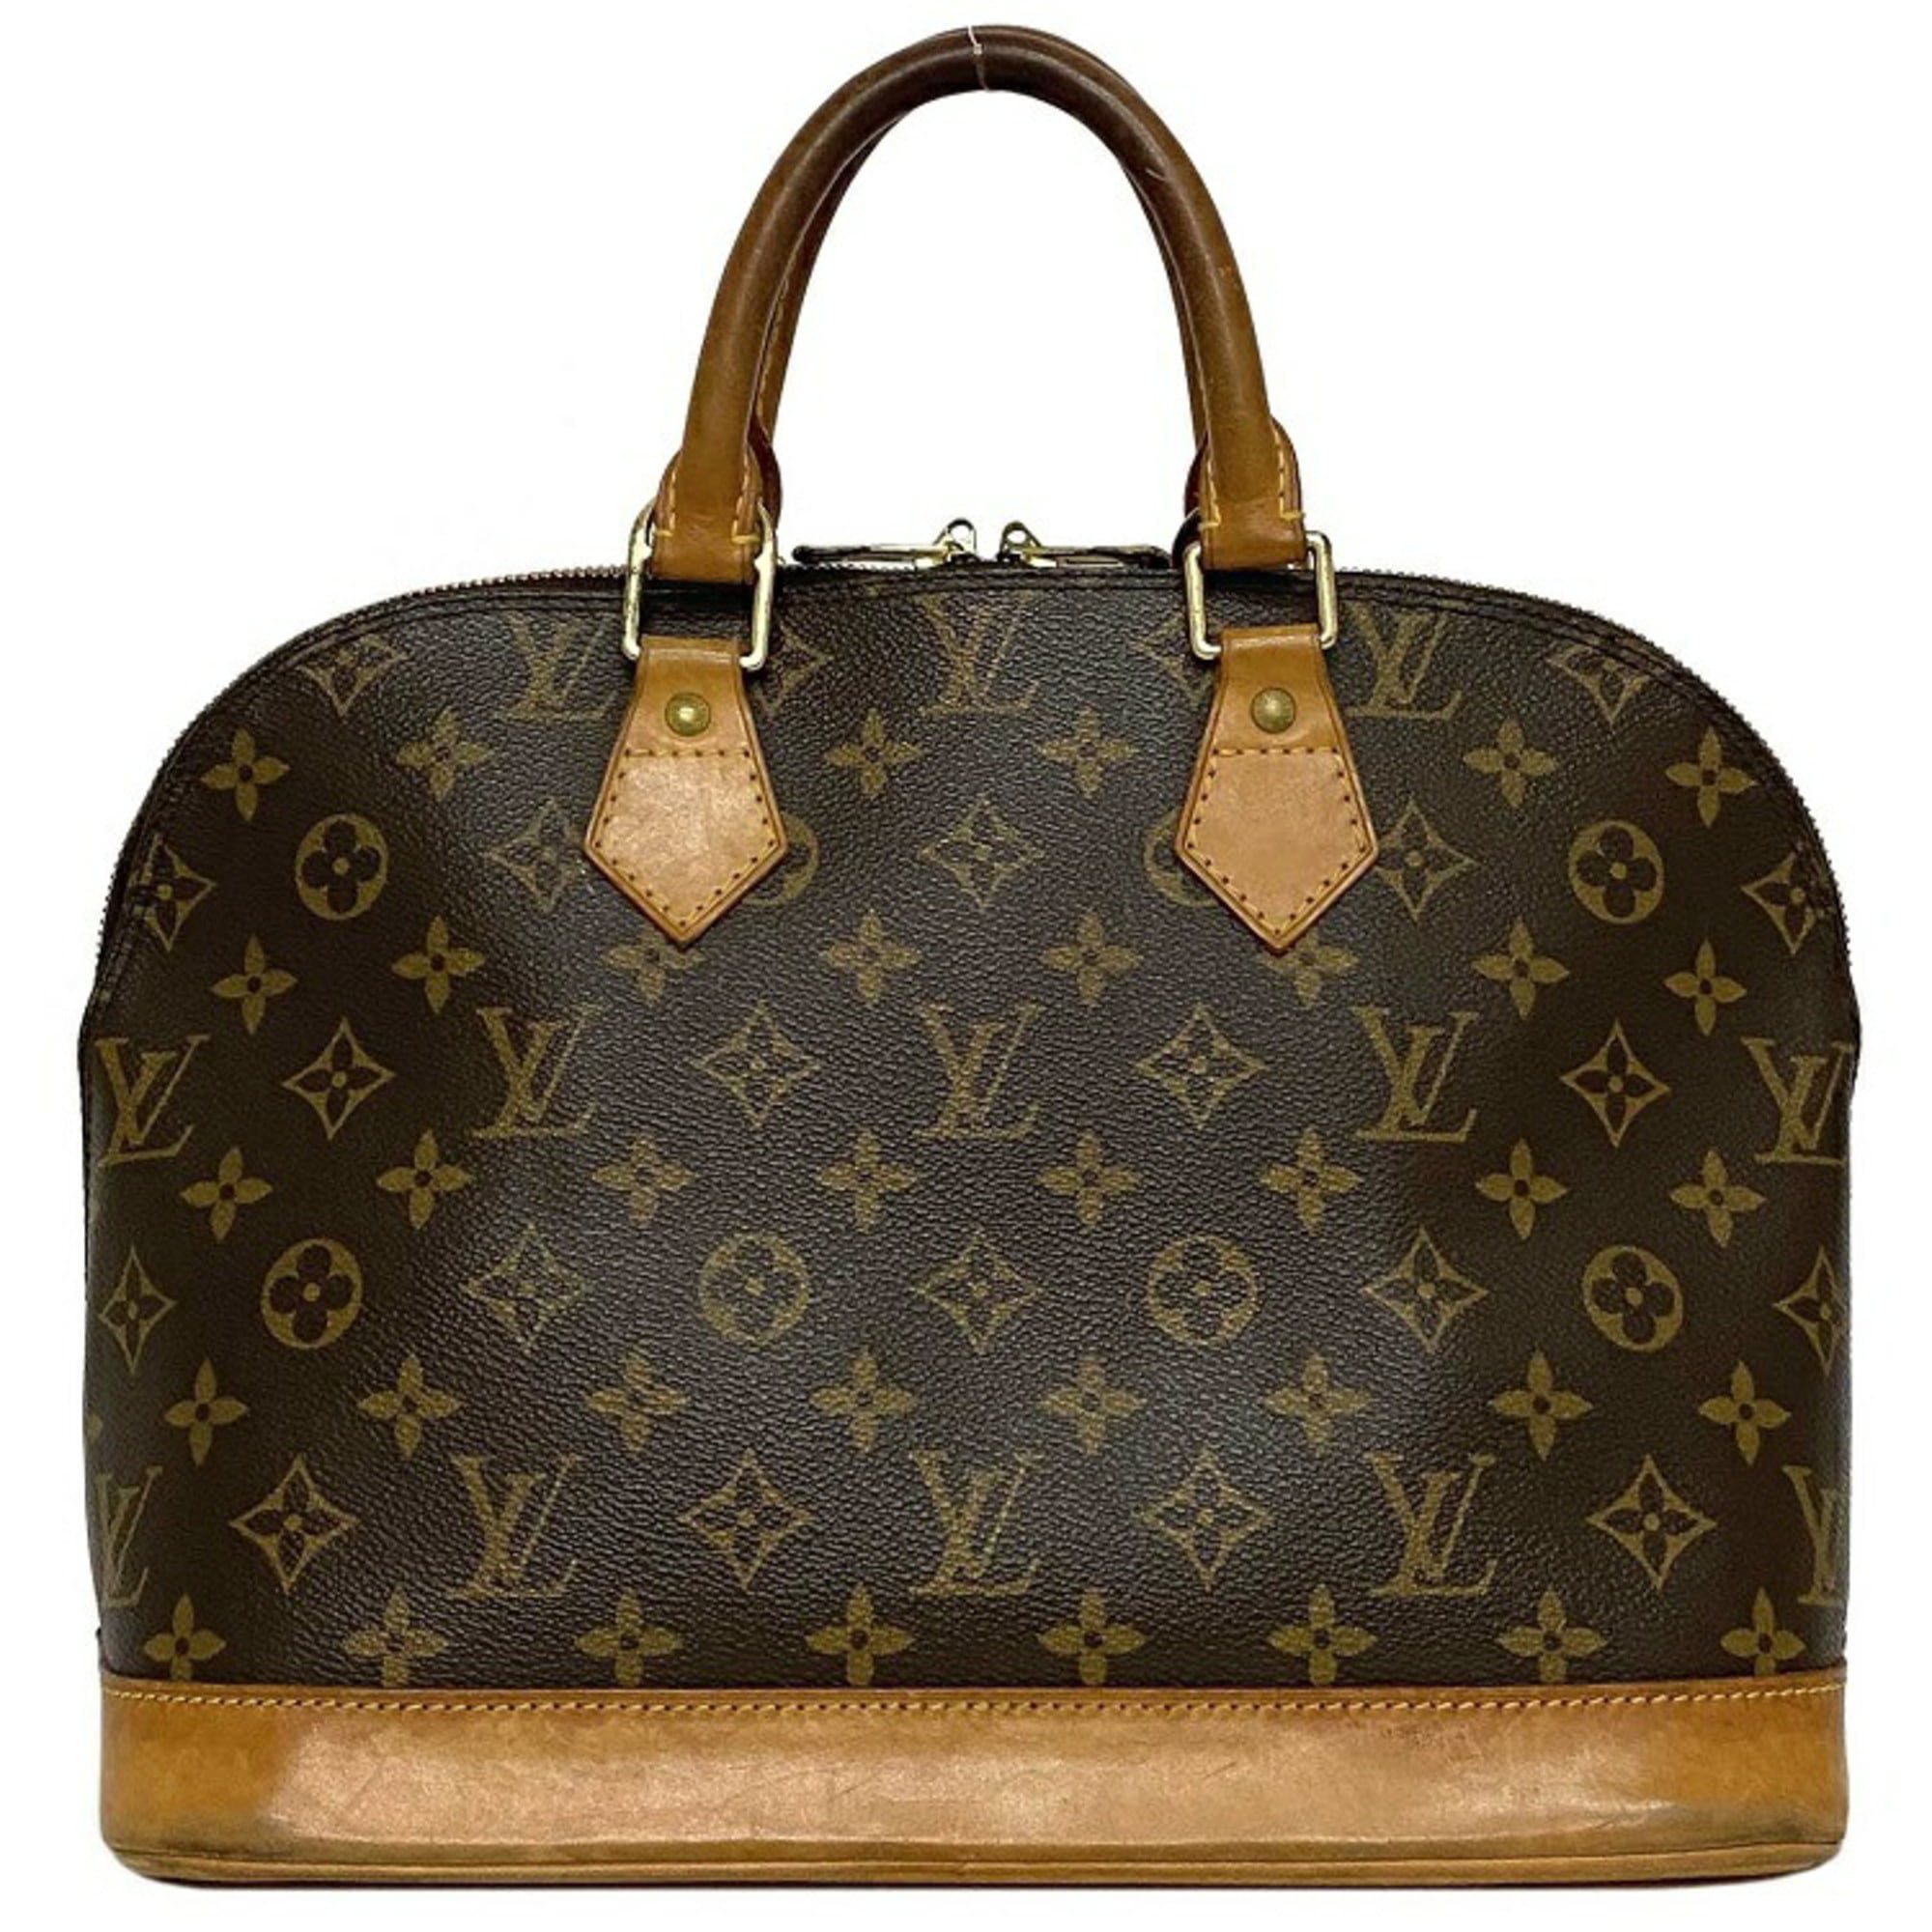 Authenticated used Handbag Alma PM Brown Beige Monogram M51130 Canvas Nume Fl0074 Louis Vuitton Key Ladies, Adult Unisex, Size: (HxWxD): 23.5cm x 31cm